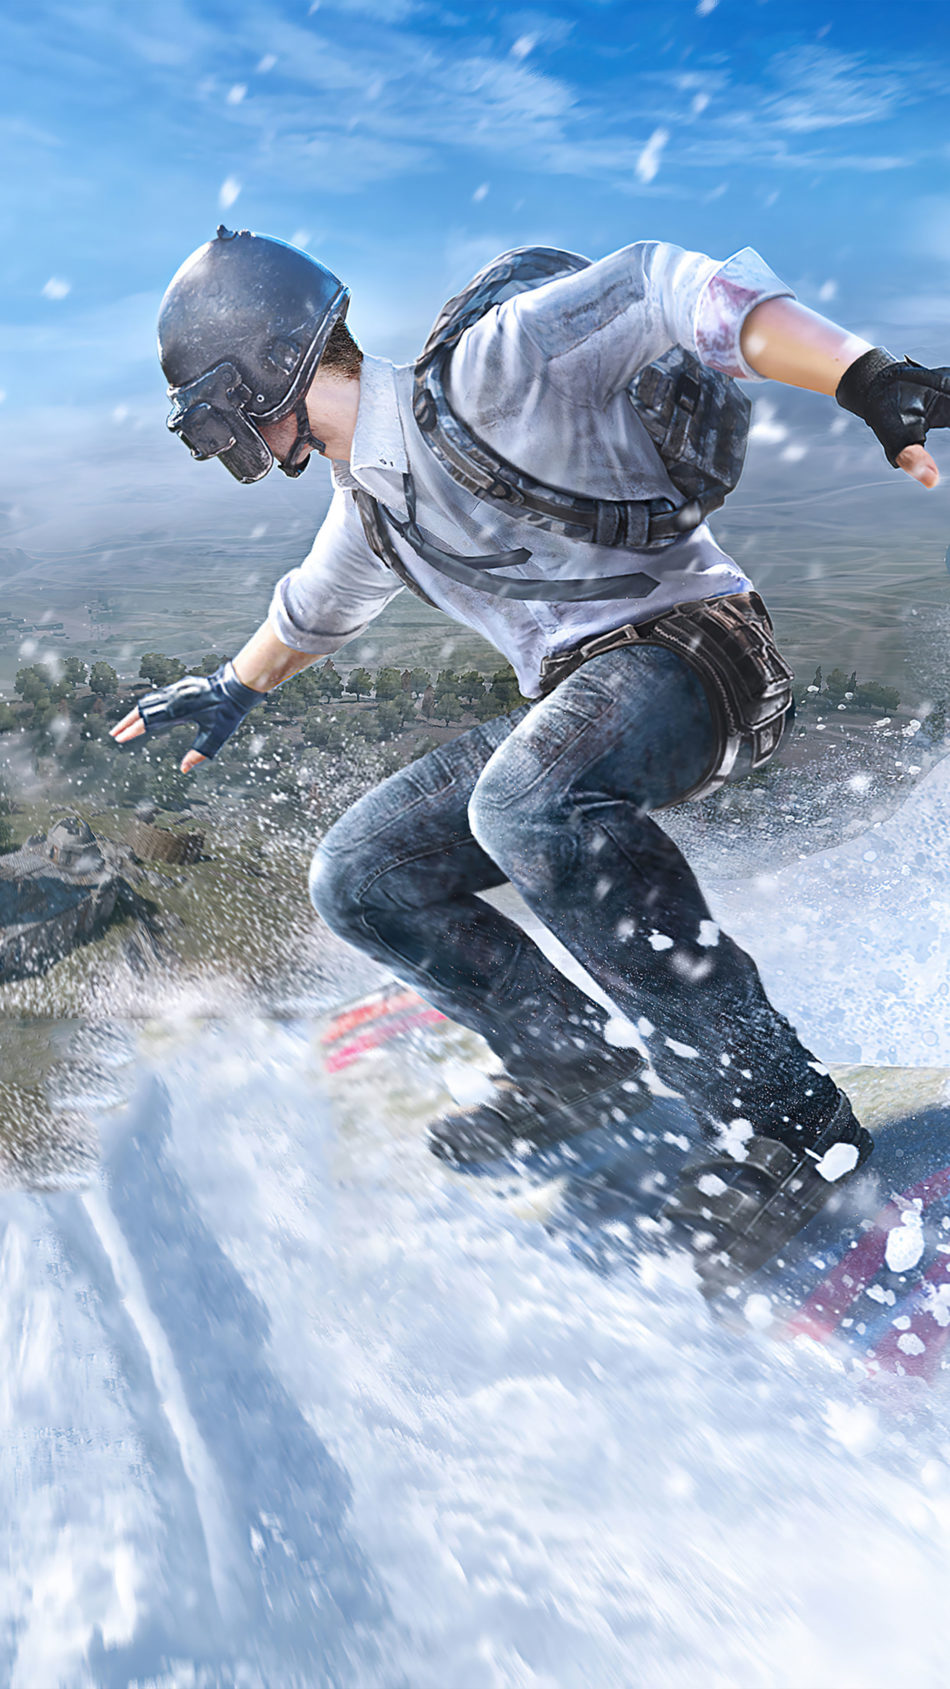 PUBG Helmet Guy Snowboard Winter 4K Ultra HD Mobile Wallpaper